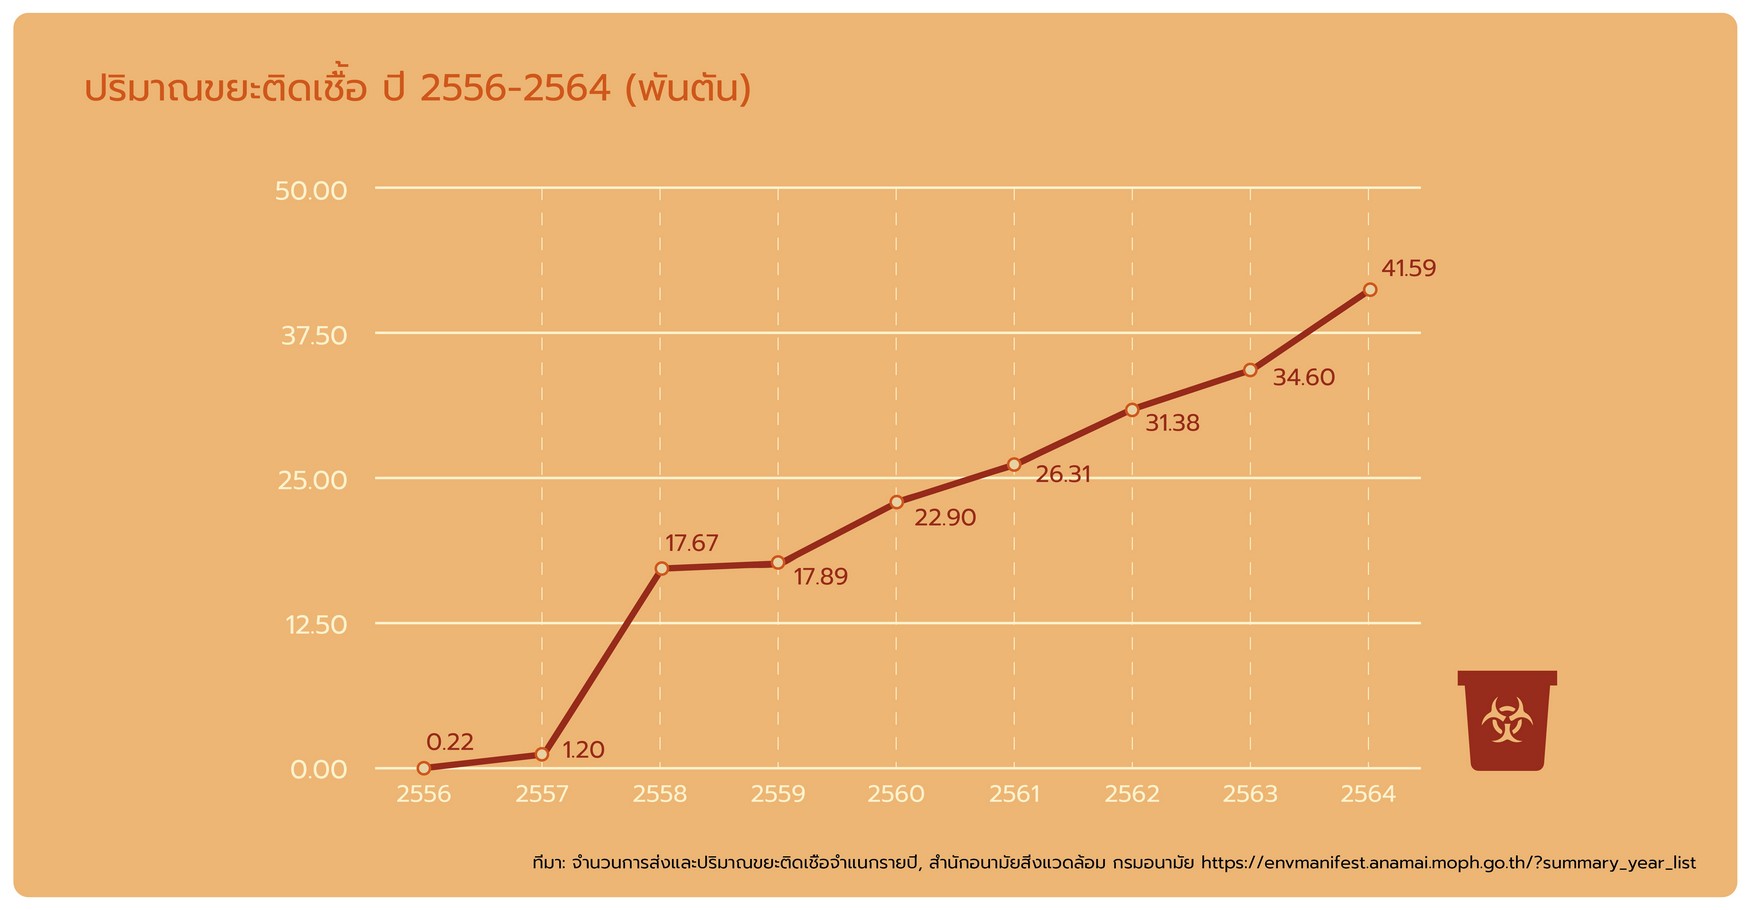 ปริมาณขยะติดเชื้อ ปี 2556-2564 (พันตัน)